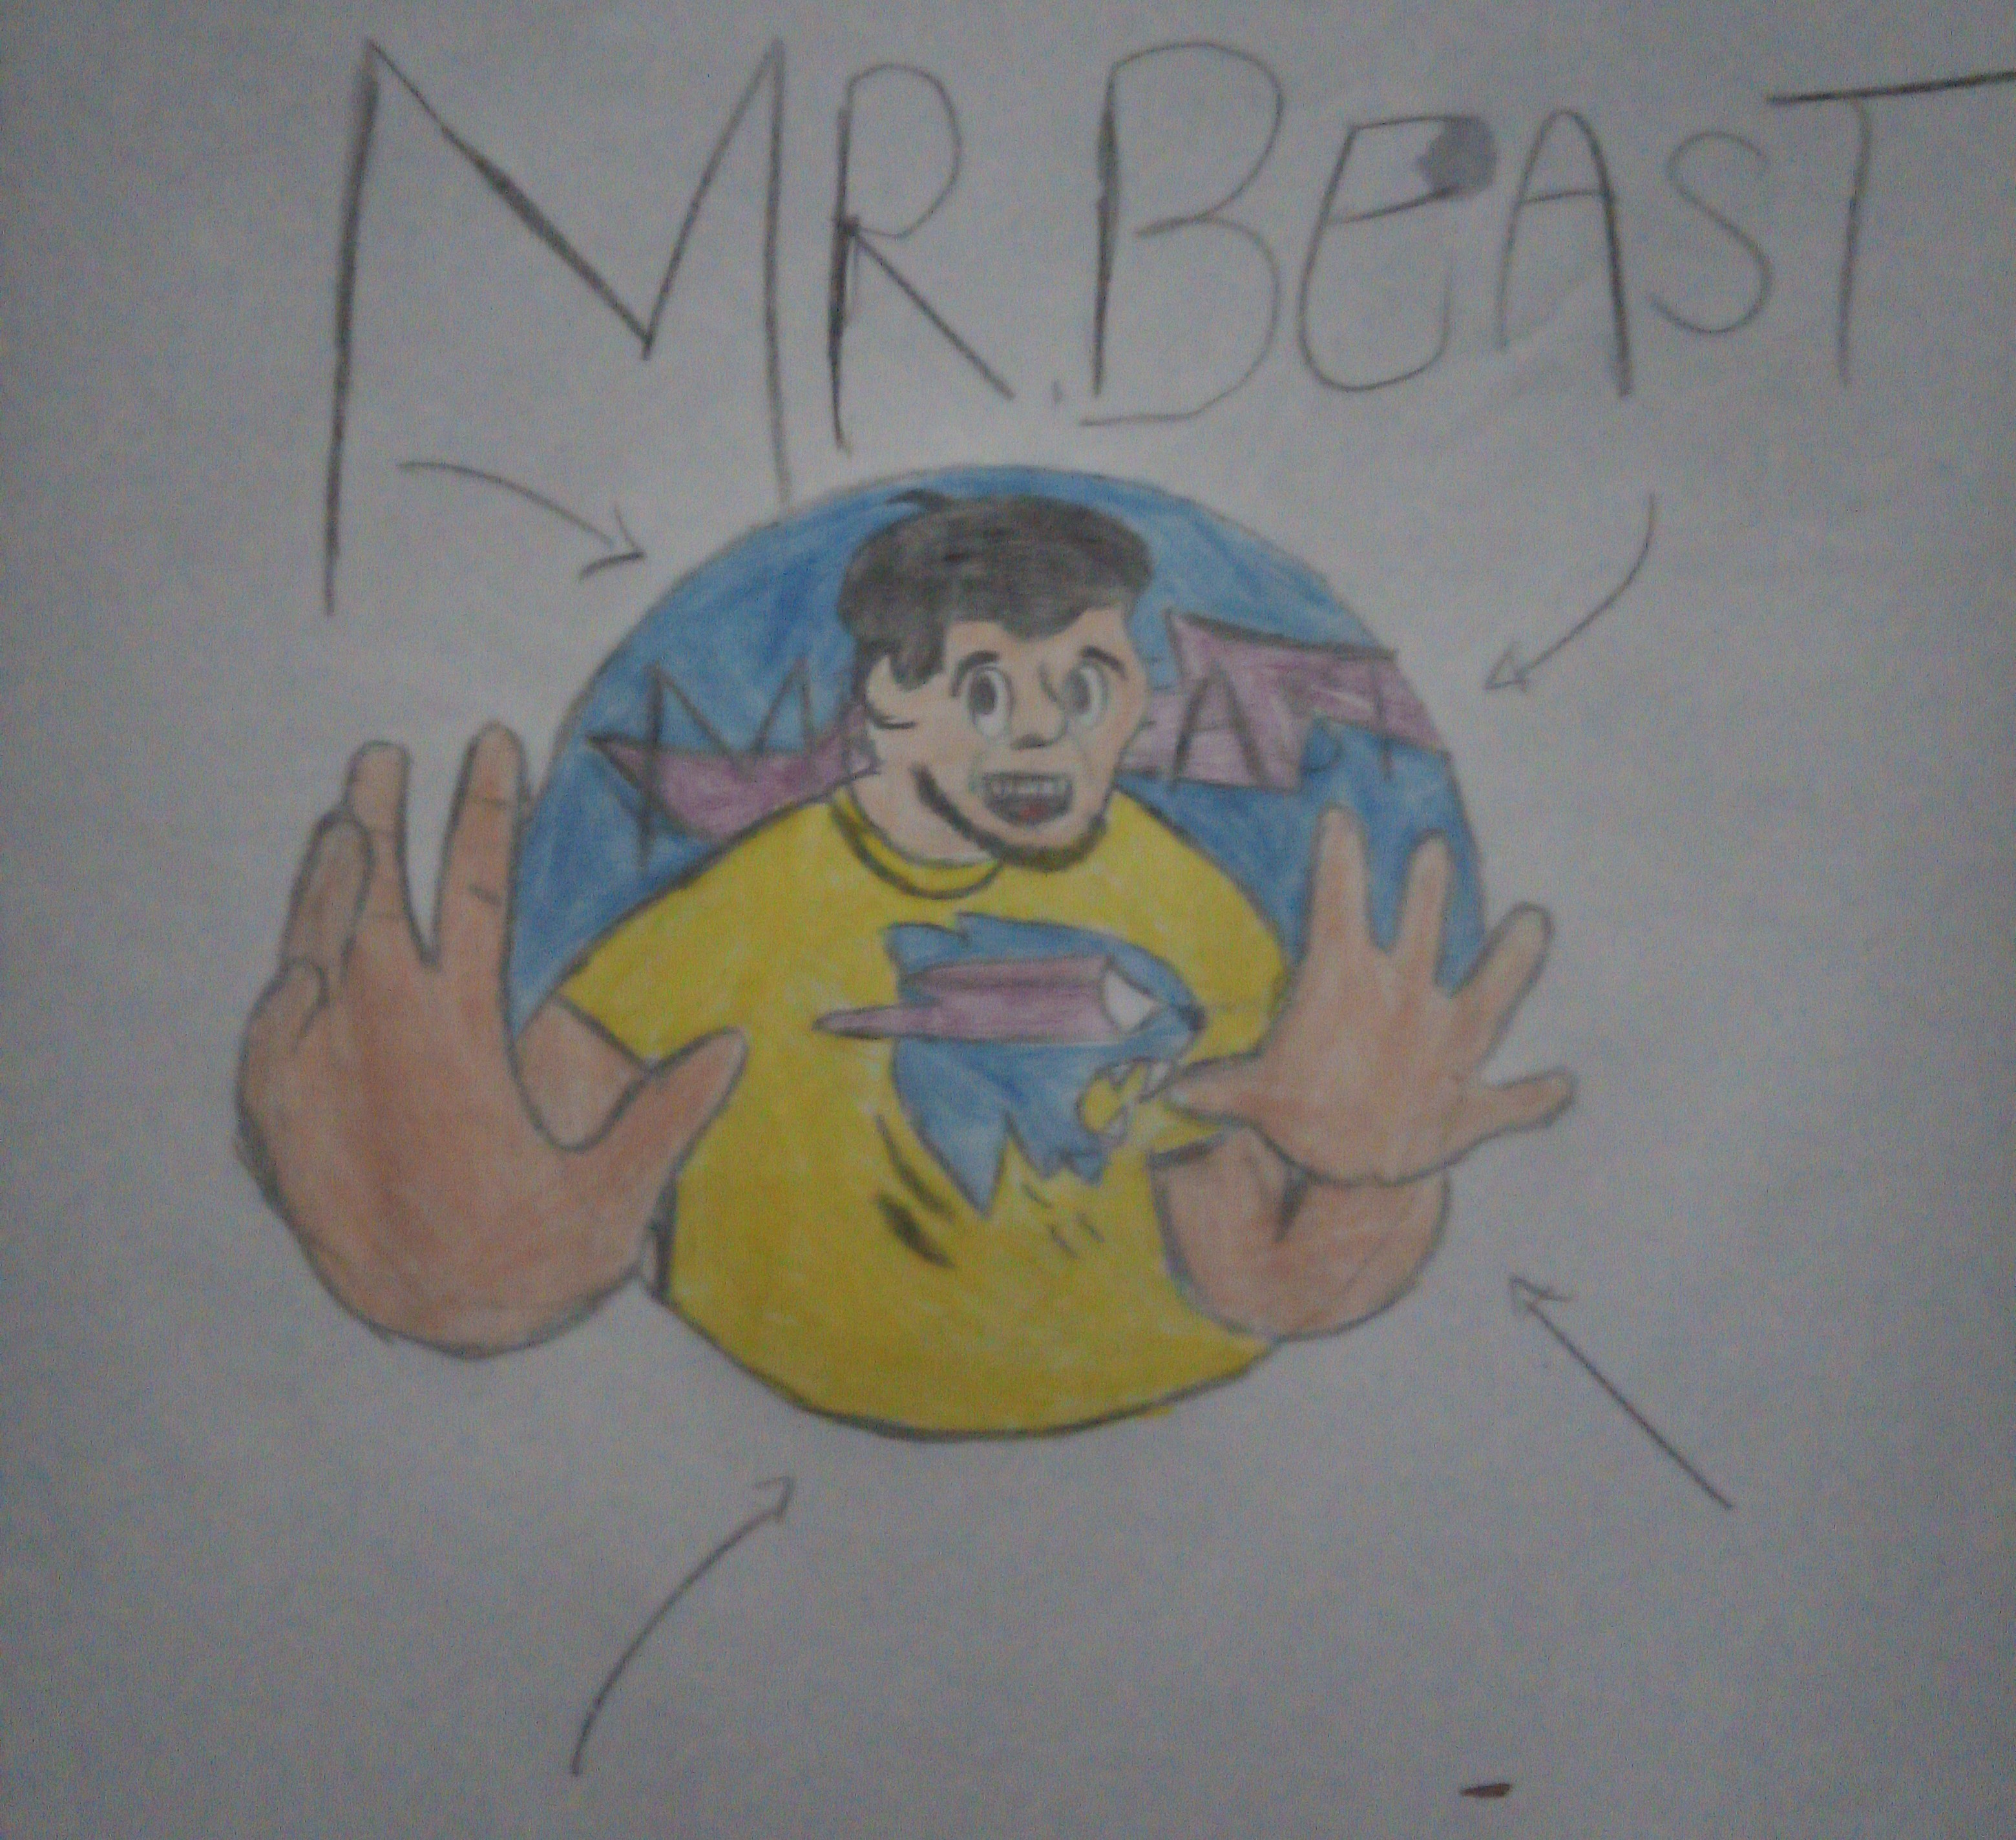 That MrBeast Meme But It's Mr Yeast by Donatoinklinggamer on DeviantArt